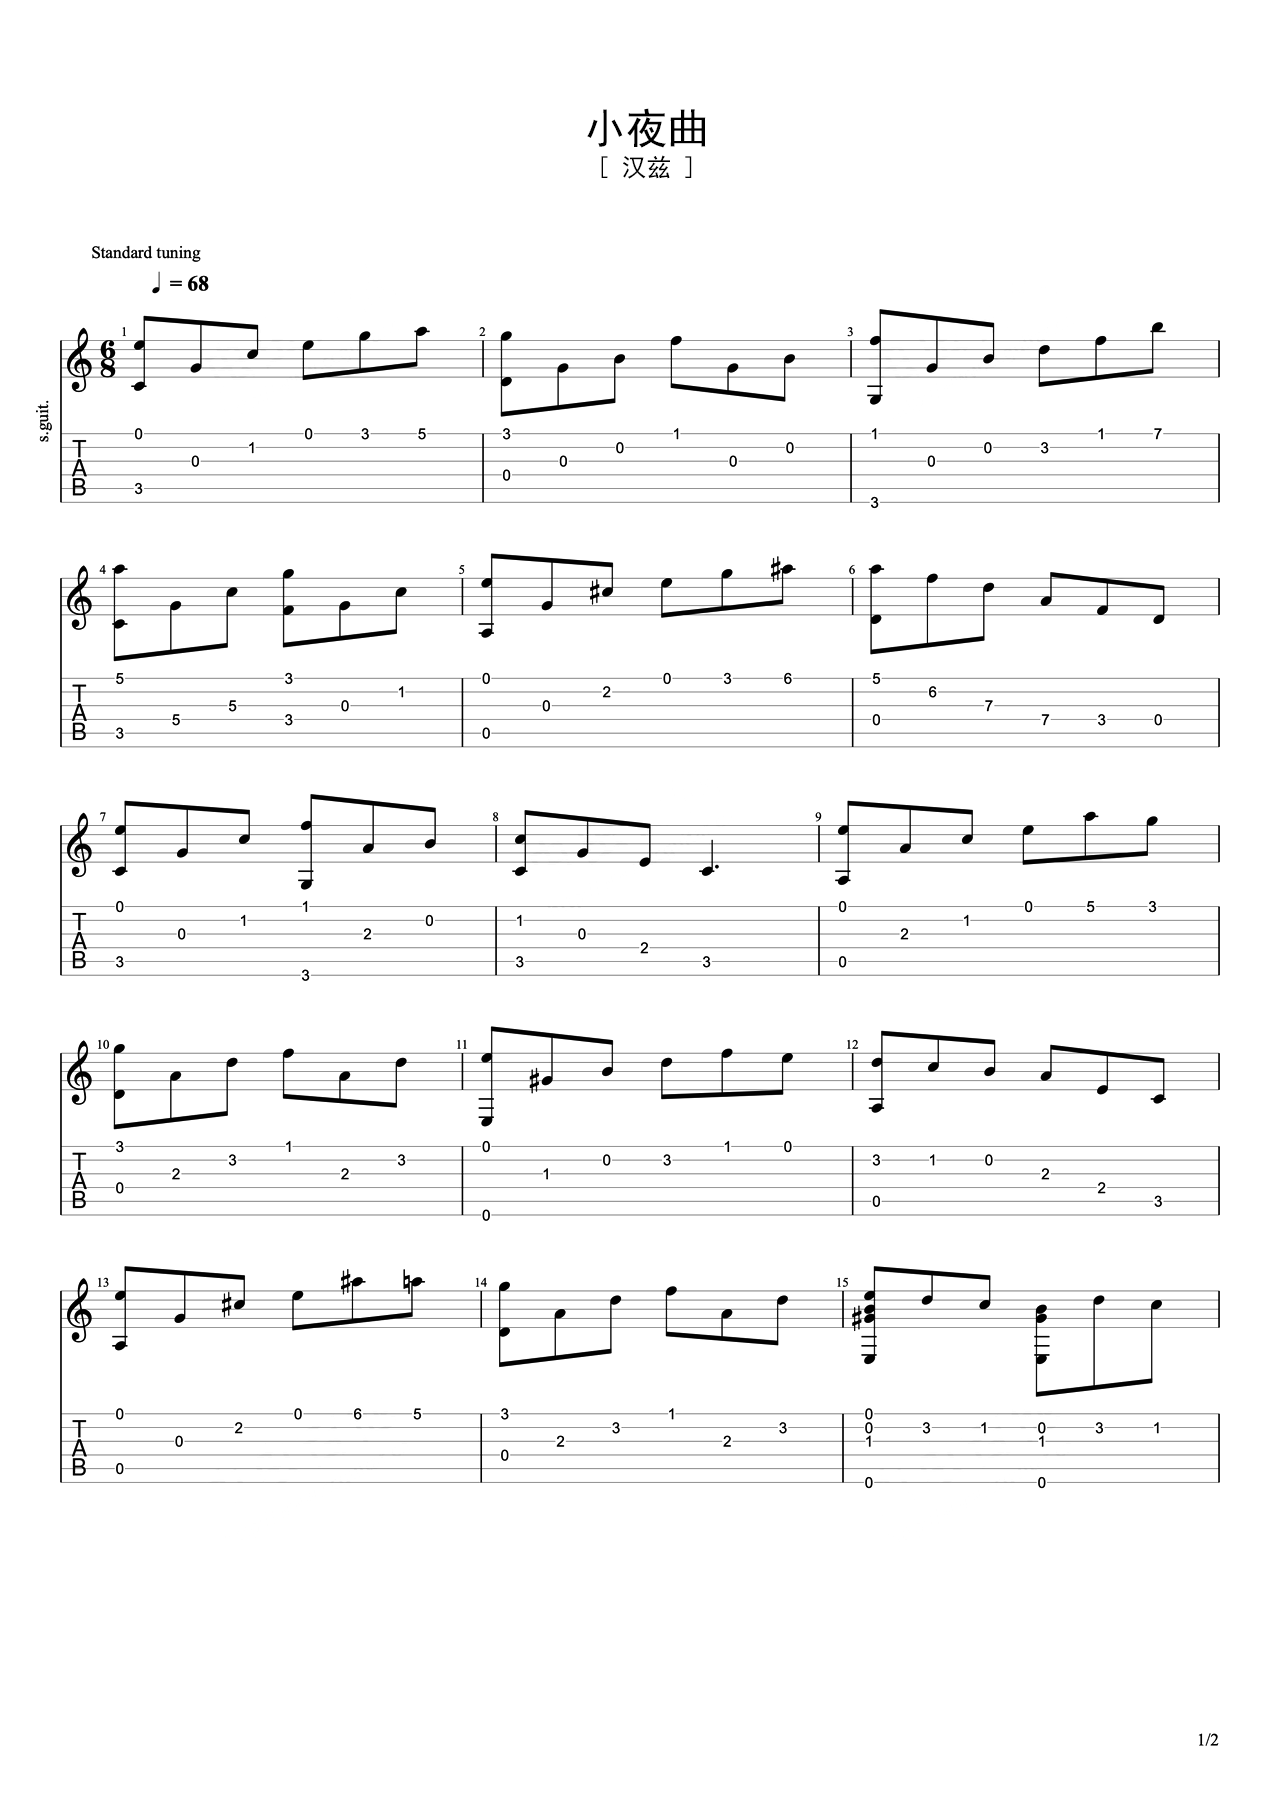 鹿先森乐队《晚安》吉他谱 - E调独奏六线谱 - 原版记谱 - 琴魂网